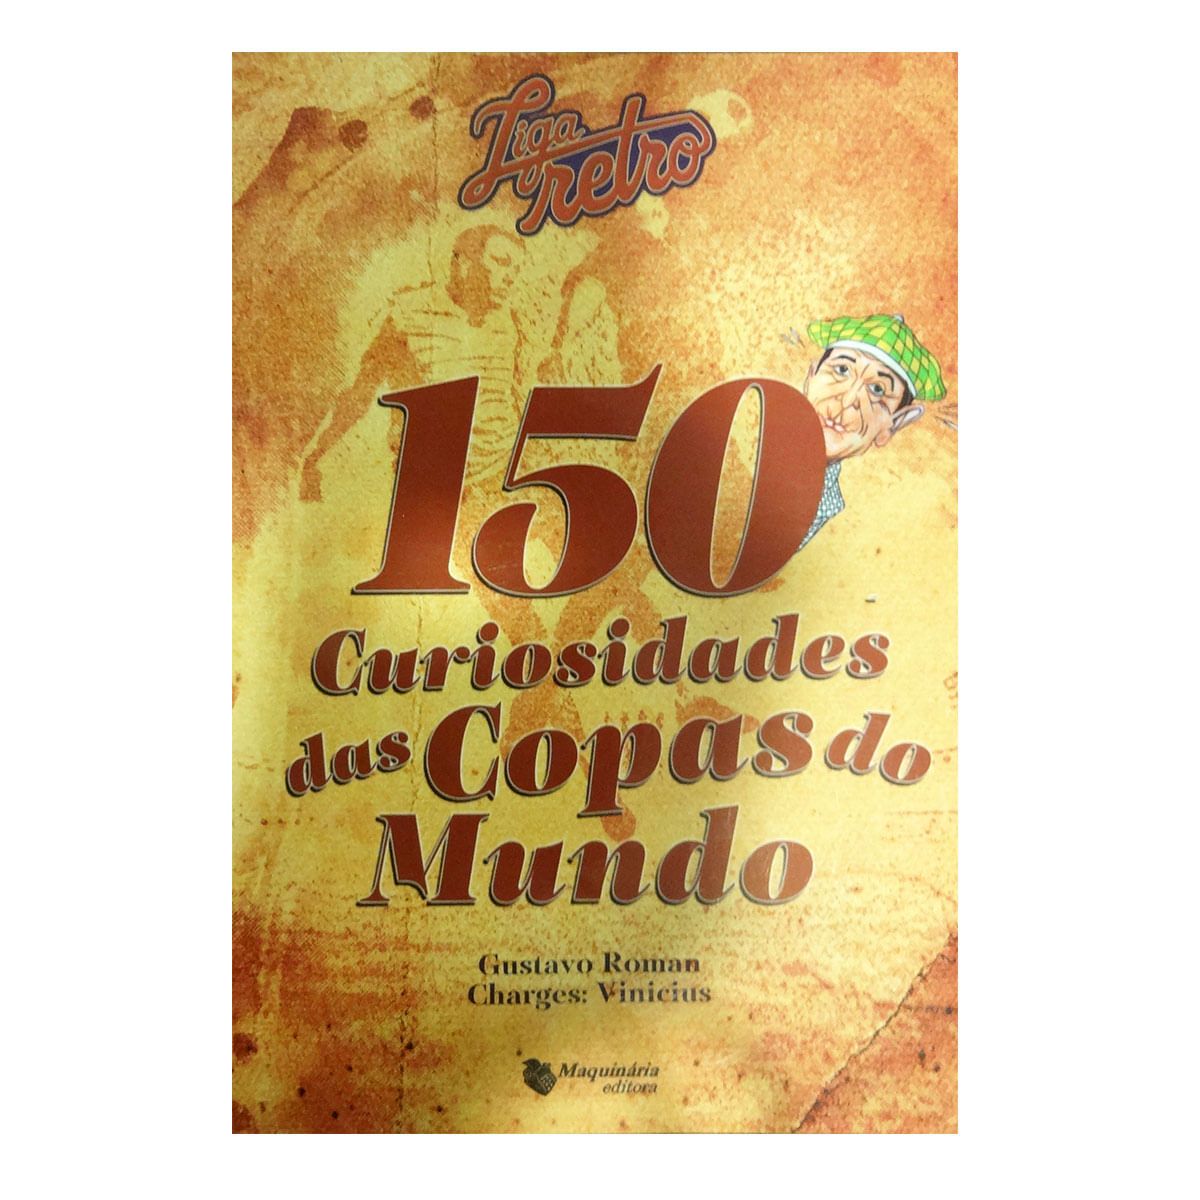 150 CURIOSIDADES DAS COPAS DO MUNDO